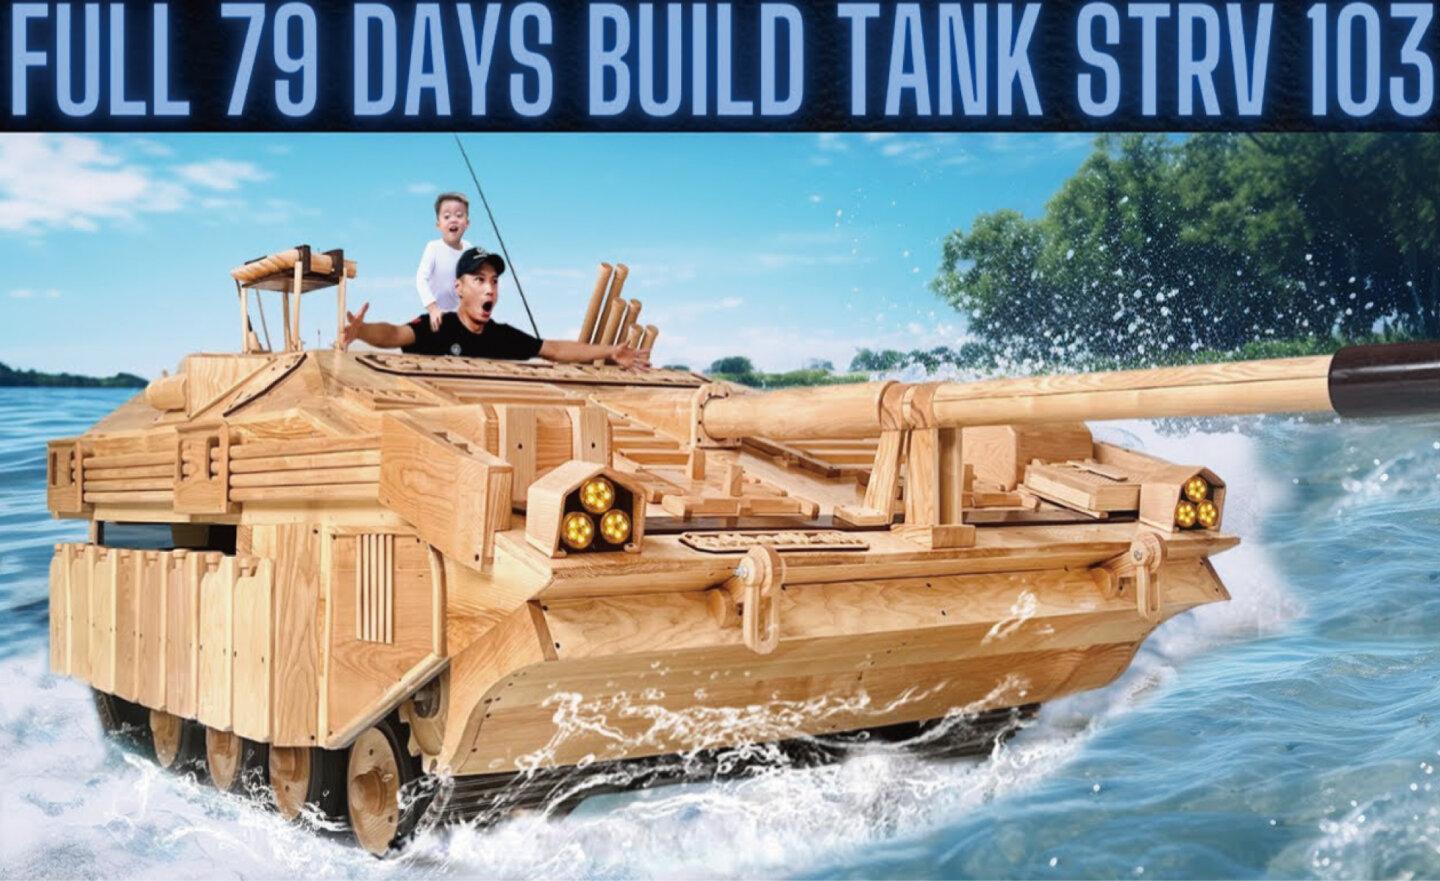 【影片】酷爸爸把《戰車世界》變成真，花 79 天打造木製 S 型戰車